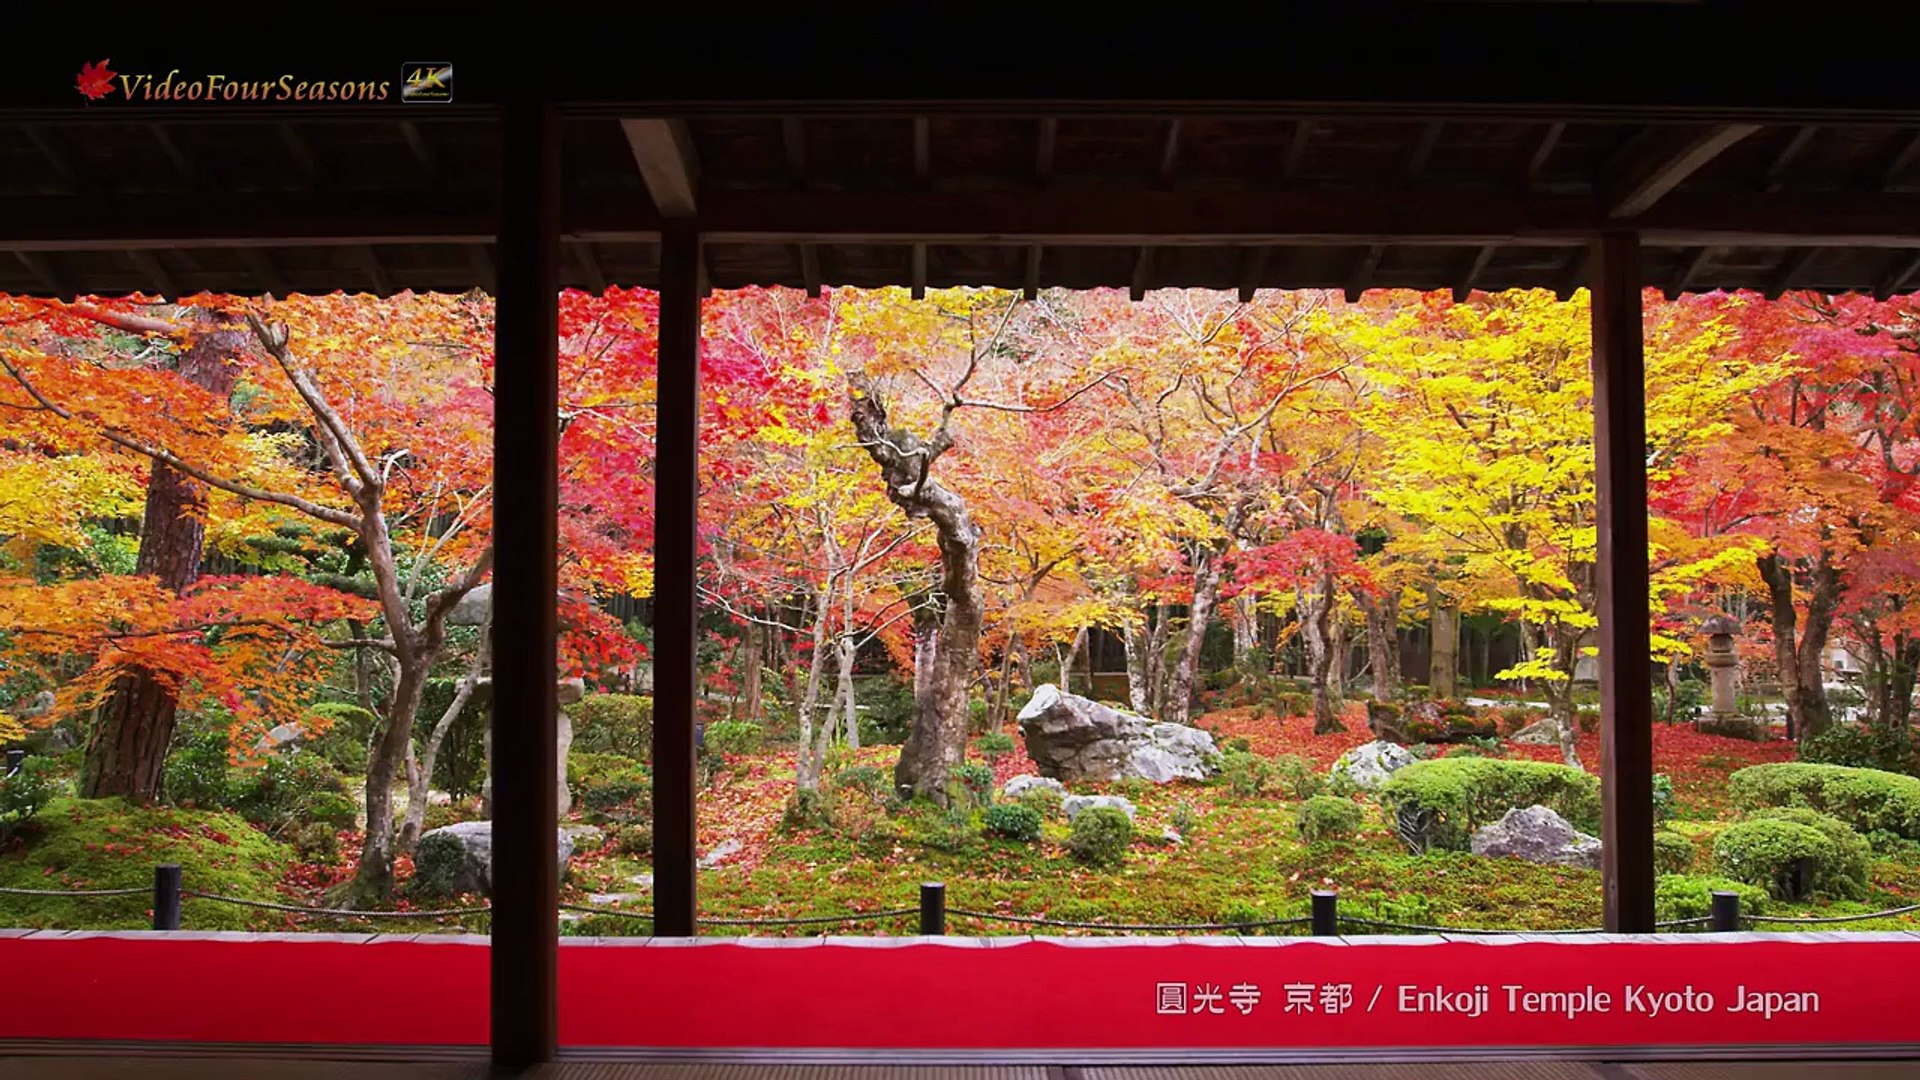 京都 圓光寺の紅葉 Enkoji Temple Kyoto Japan 4k Uhd 美しい日本の風景 The Beautiful Scenery Of Japan Video Dailymotion